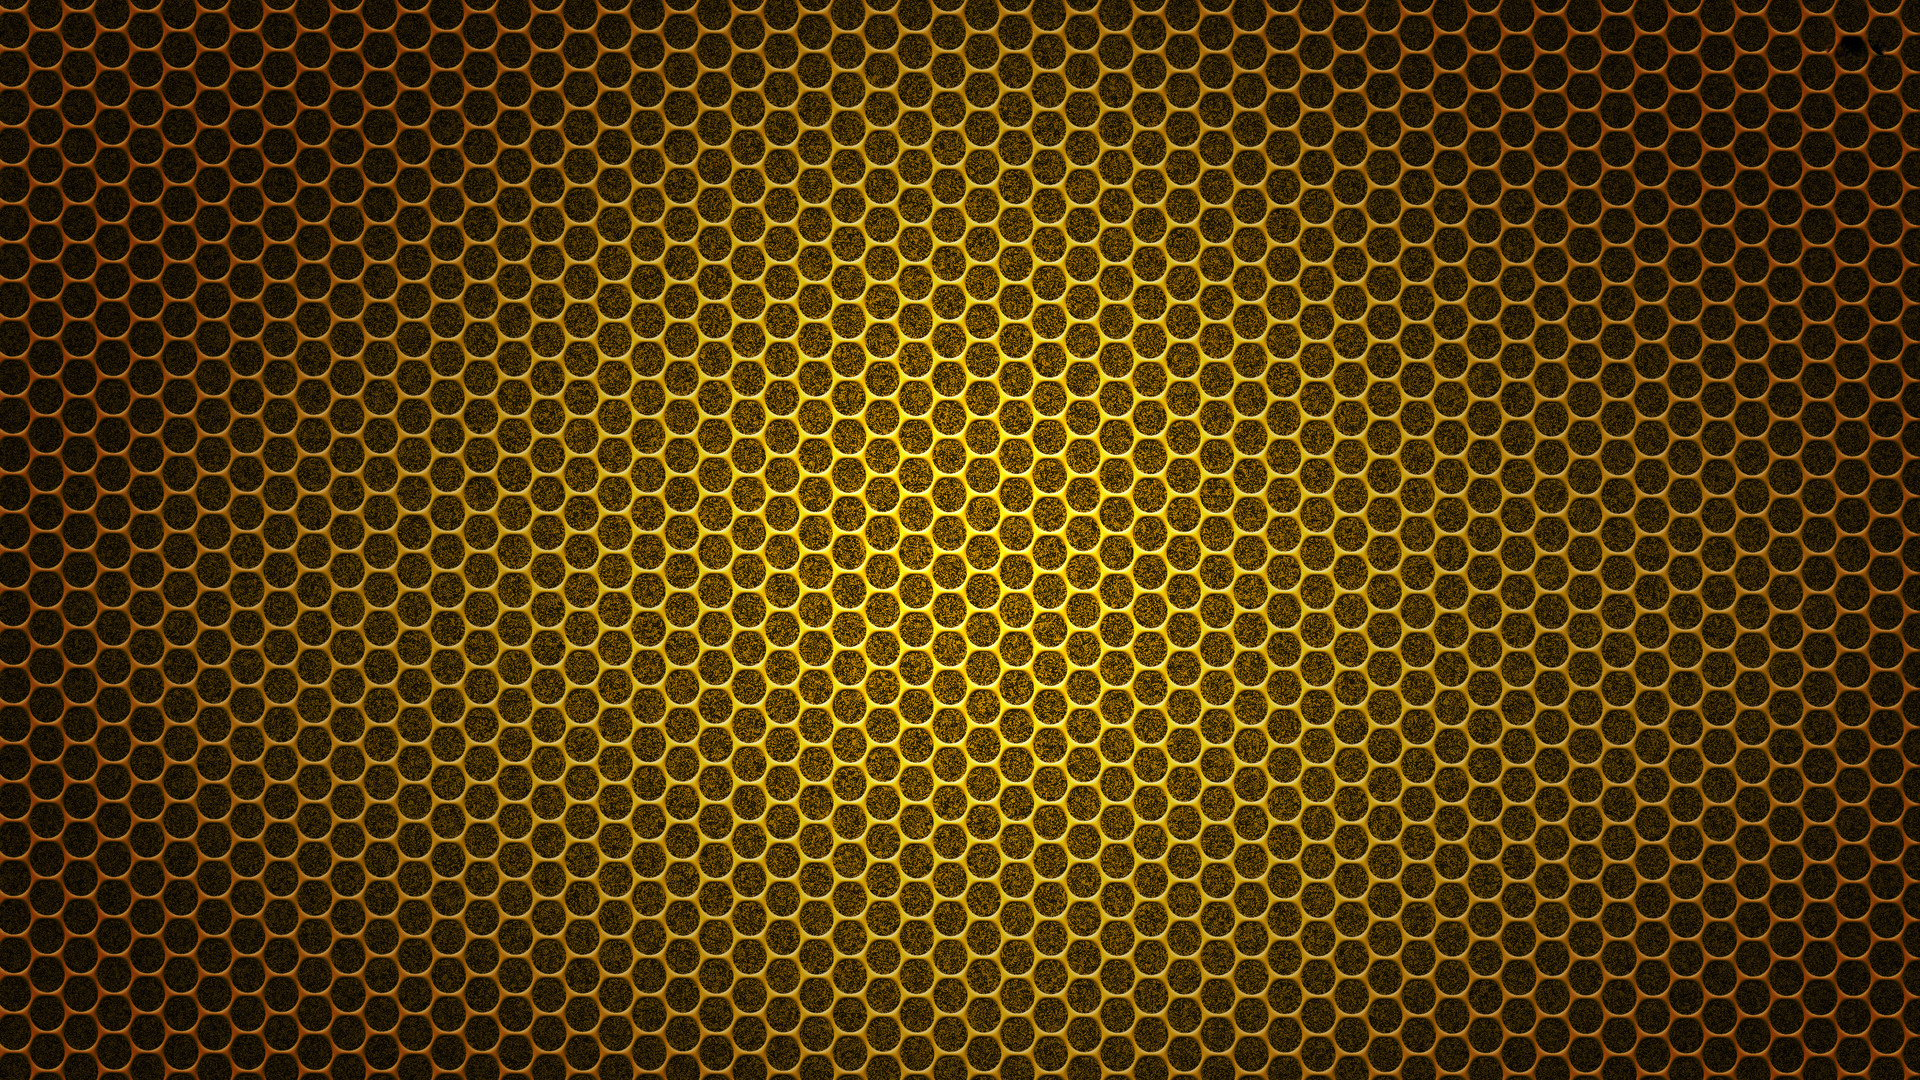 Hình nền phấn vàng HD: Yêu thích gam màu vàng độc đáo và lộng lẫy? Những hình ảnh phấn vàng HD sẽ mang lại cho bạn cảm giác sang trọng, quý phái và đầy sức sống cho màn hình máy tính của bạn. Truy cập ngay và khám phá bộ sưu tập hình nền phấn vàng HD của chúng tôi ngay hôm nay.